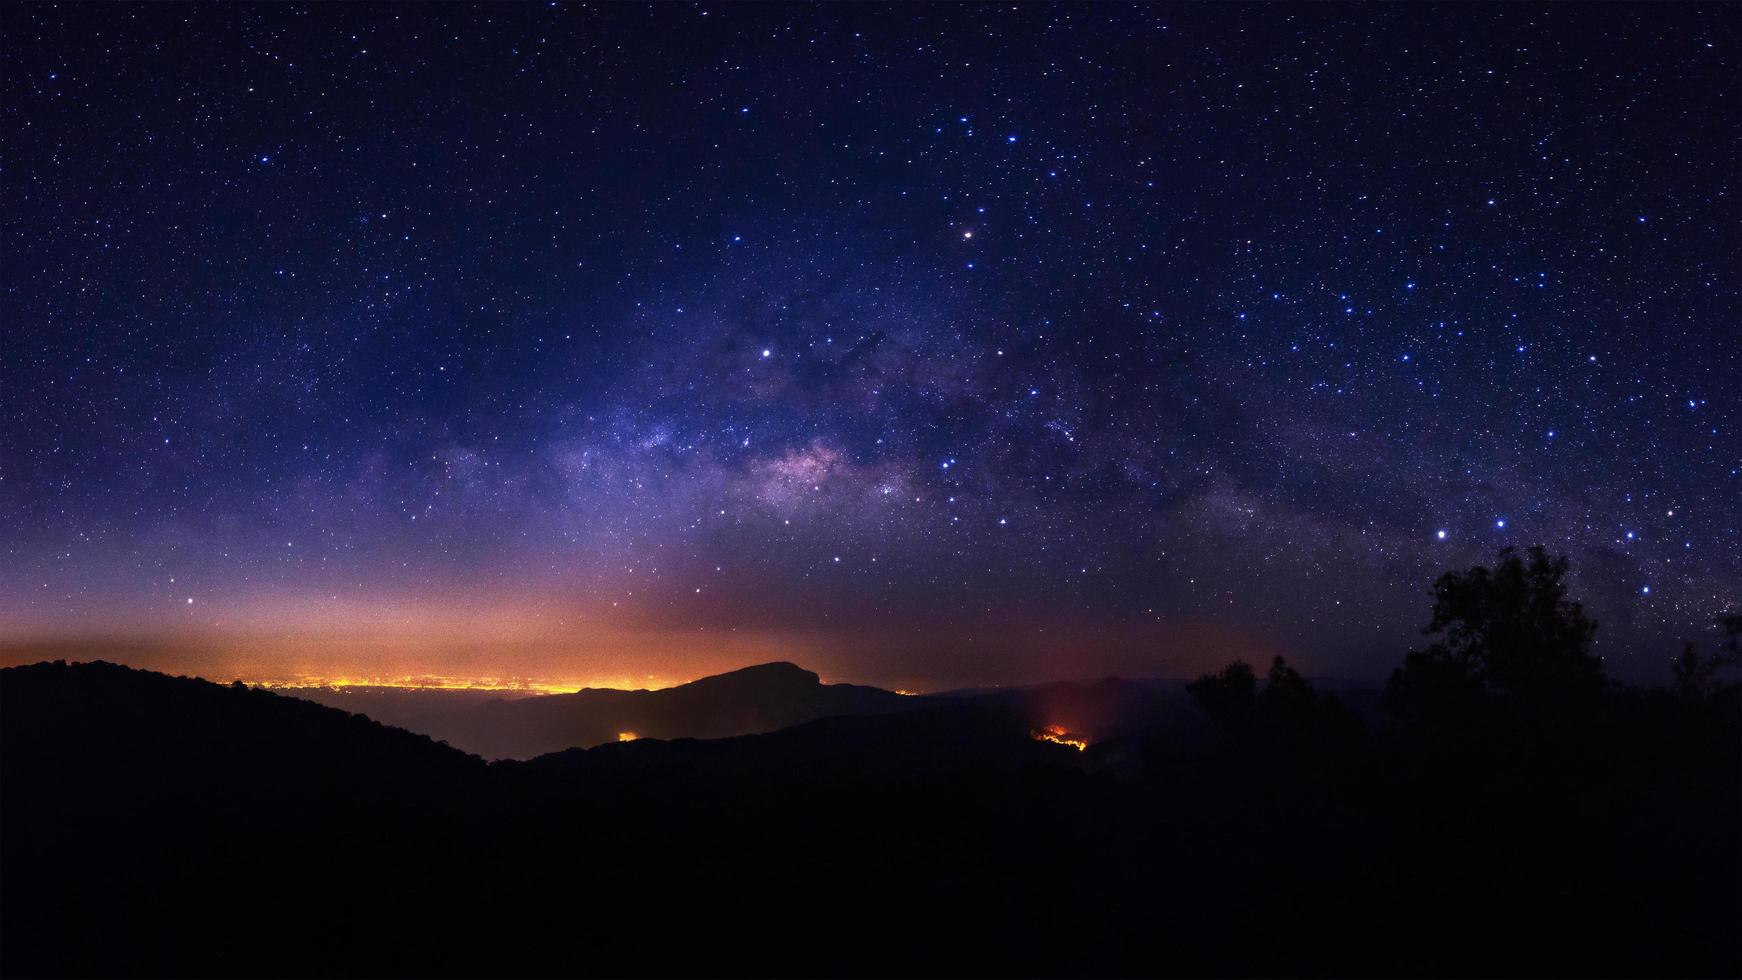 galáxia da via láctea com estrelas e poeira espacial no universo foto